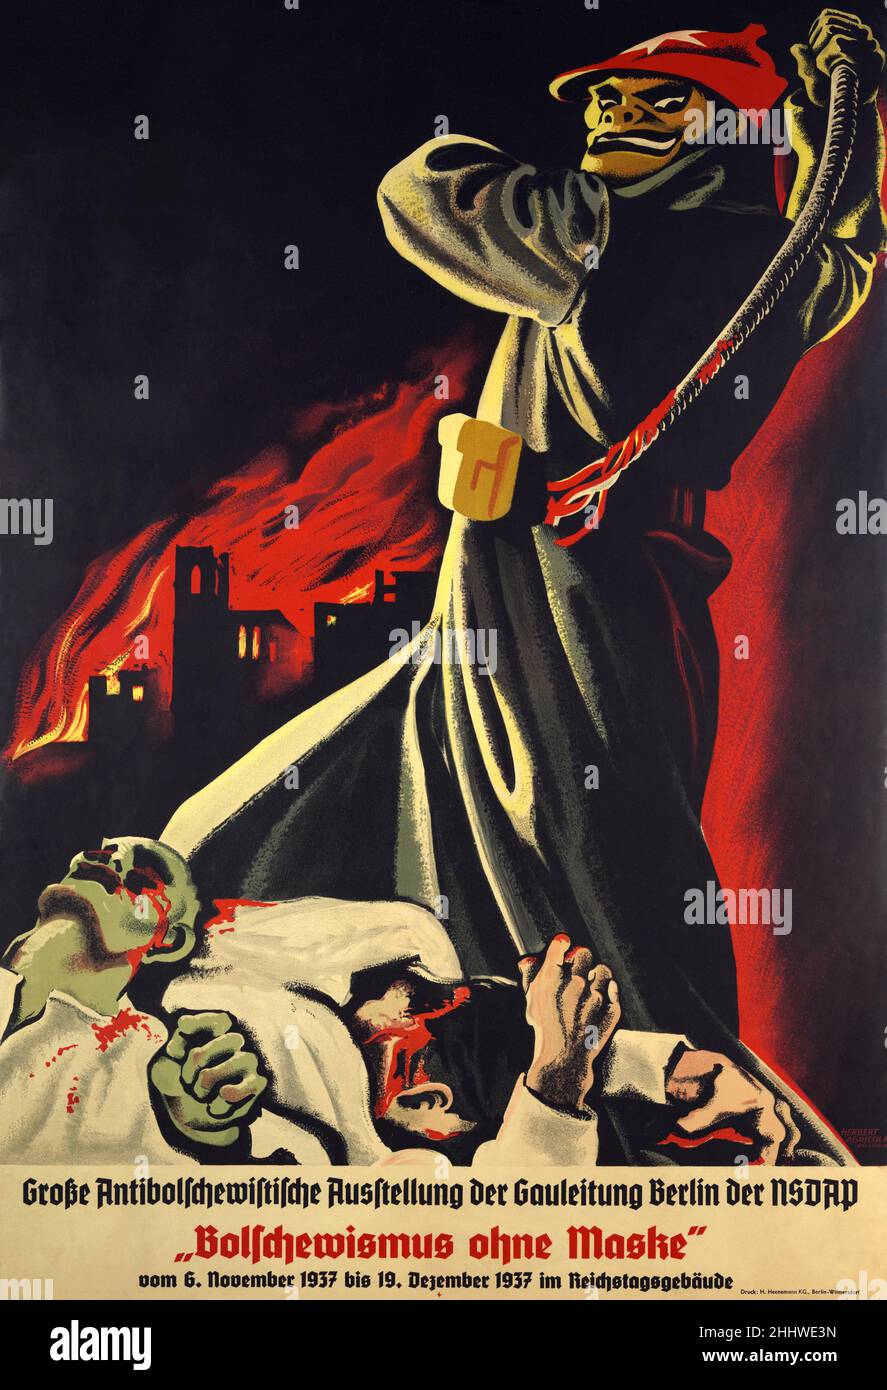 Un poster di propaganda anti-bolscevica nazista prima della guerra che mostra una figura demoniaca che indossa una tunica operaia e un cappello rosso che frusta corpi sanguinanti con una città bruciante oltre. La didascalia è Bolscevismo senza maschera. Foto Stock